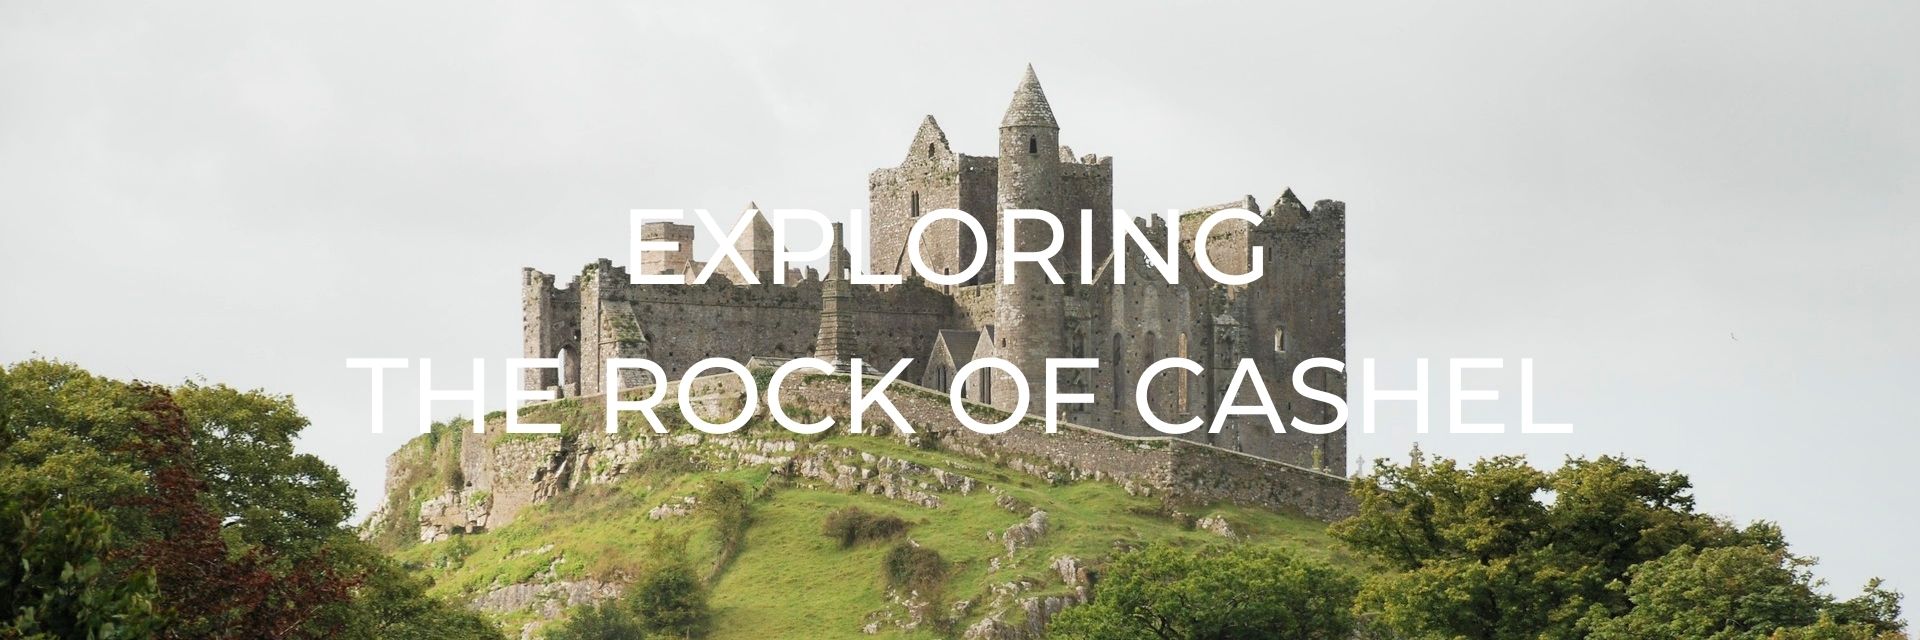 Exploring the Rock of Cashel Desktop Header